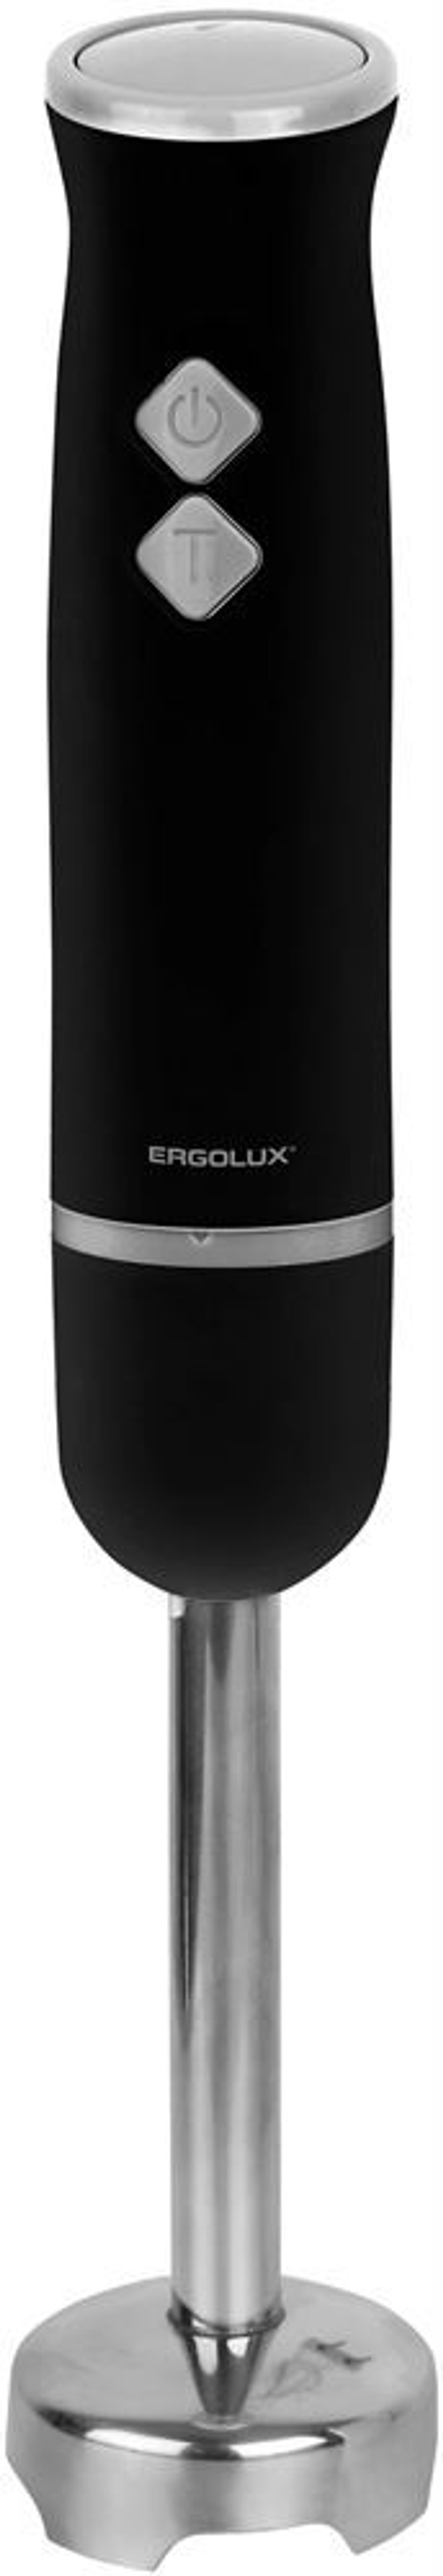 ERGOLUX ELX-HB03-C72 черн-хром (нерж.сталь, 2 скорости, 300 Вт, 220-240В)